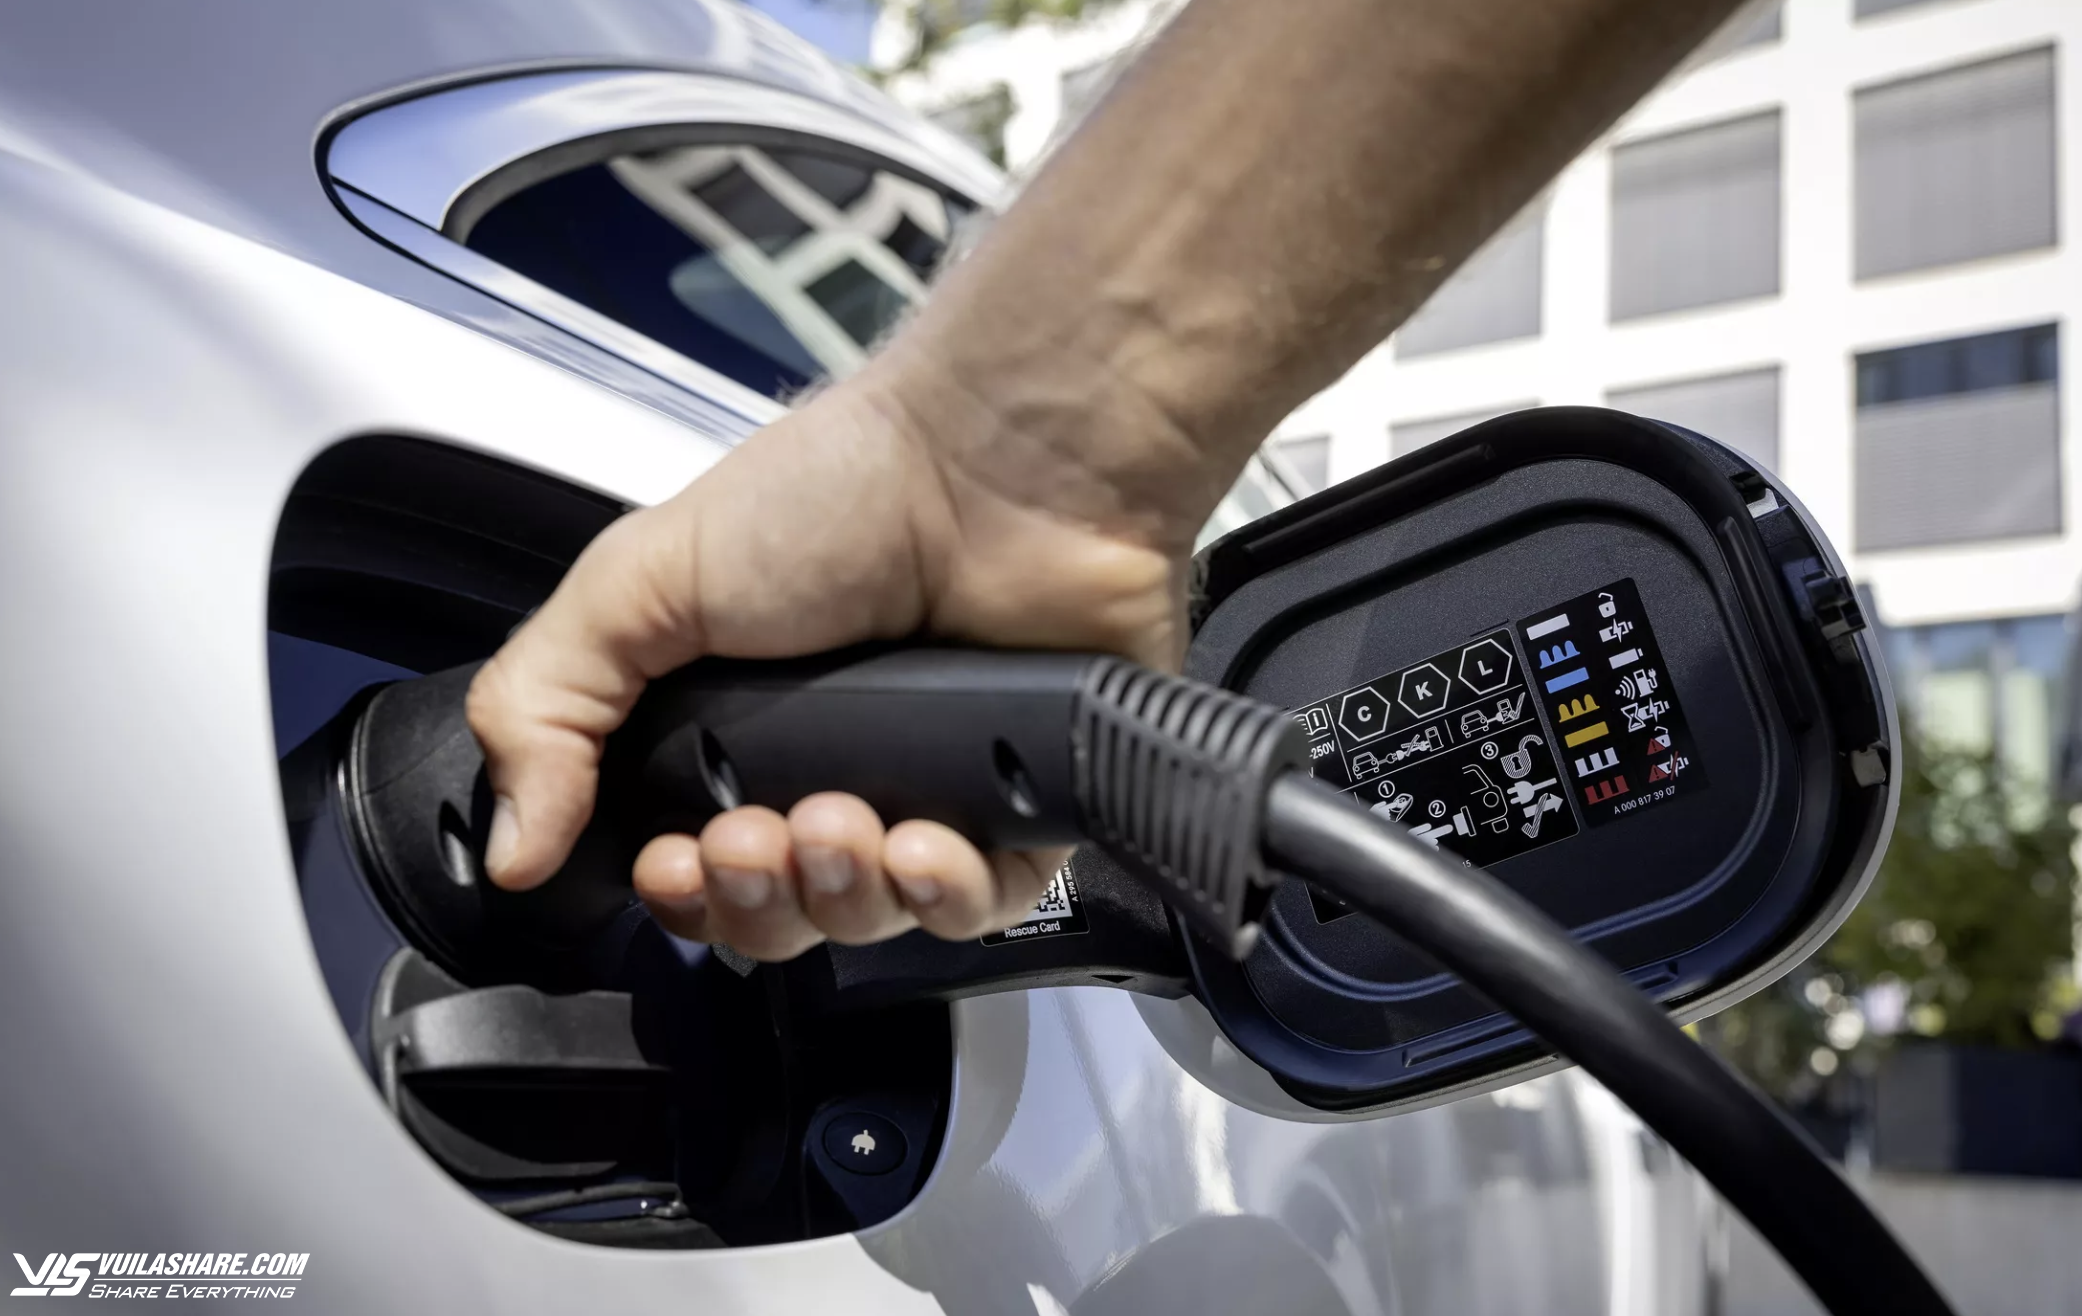 Lo ngại việc sạc pin, tỷ lệ khách mua ô tô điện sụt giảm- Ảnh 2.